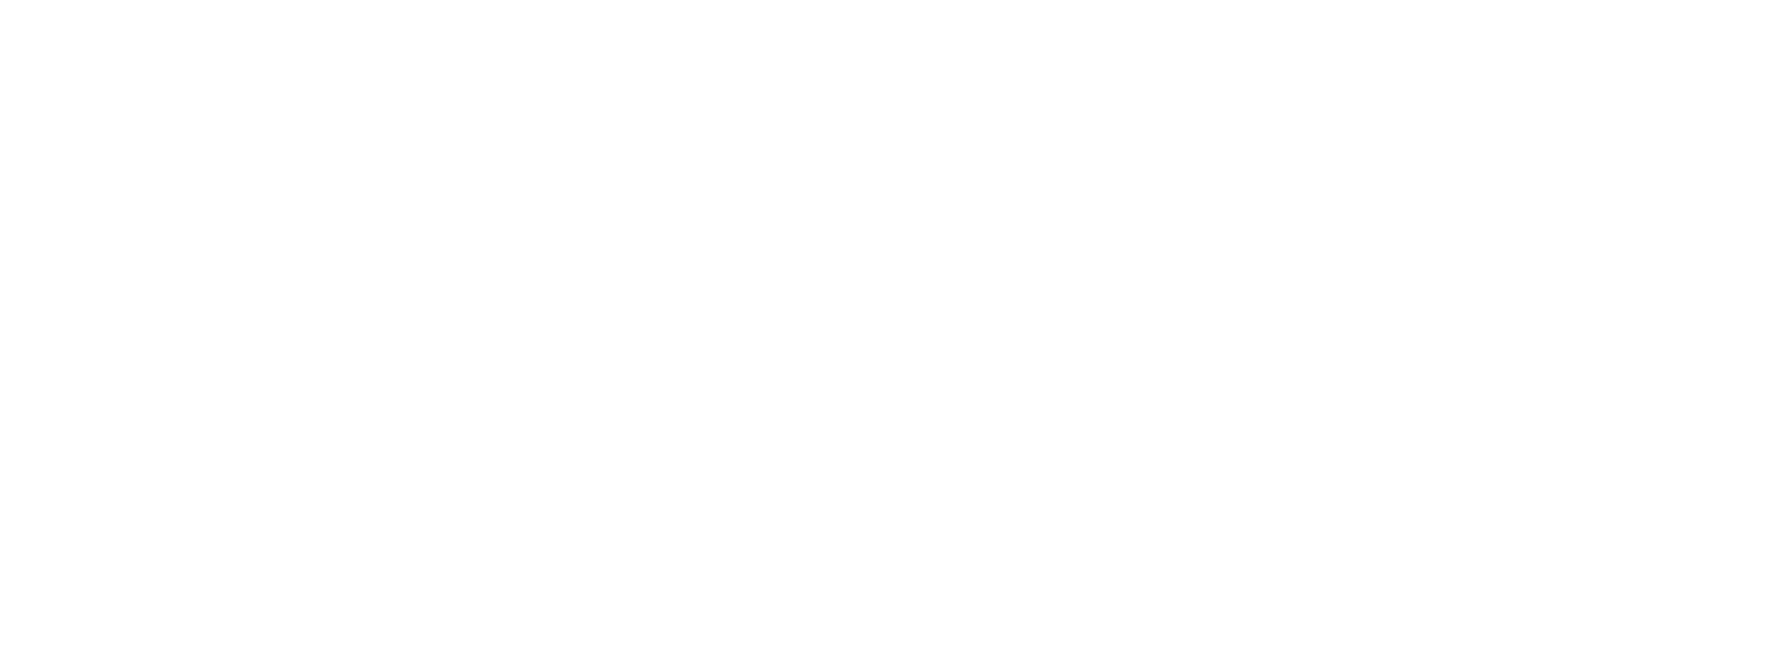 CITE-logo